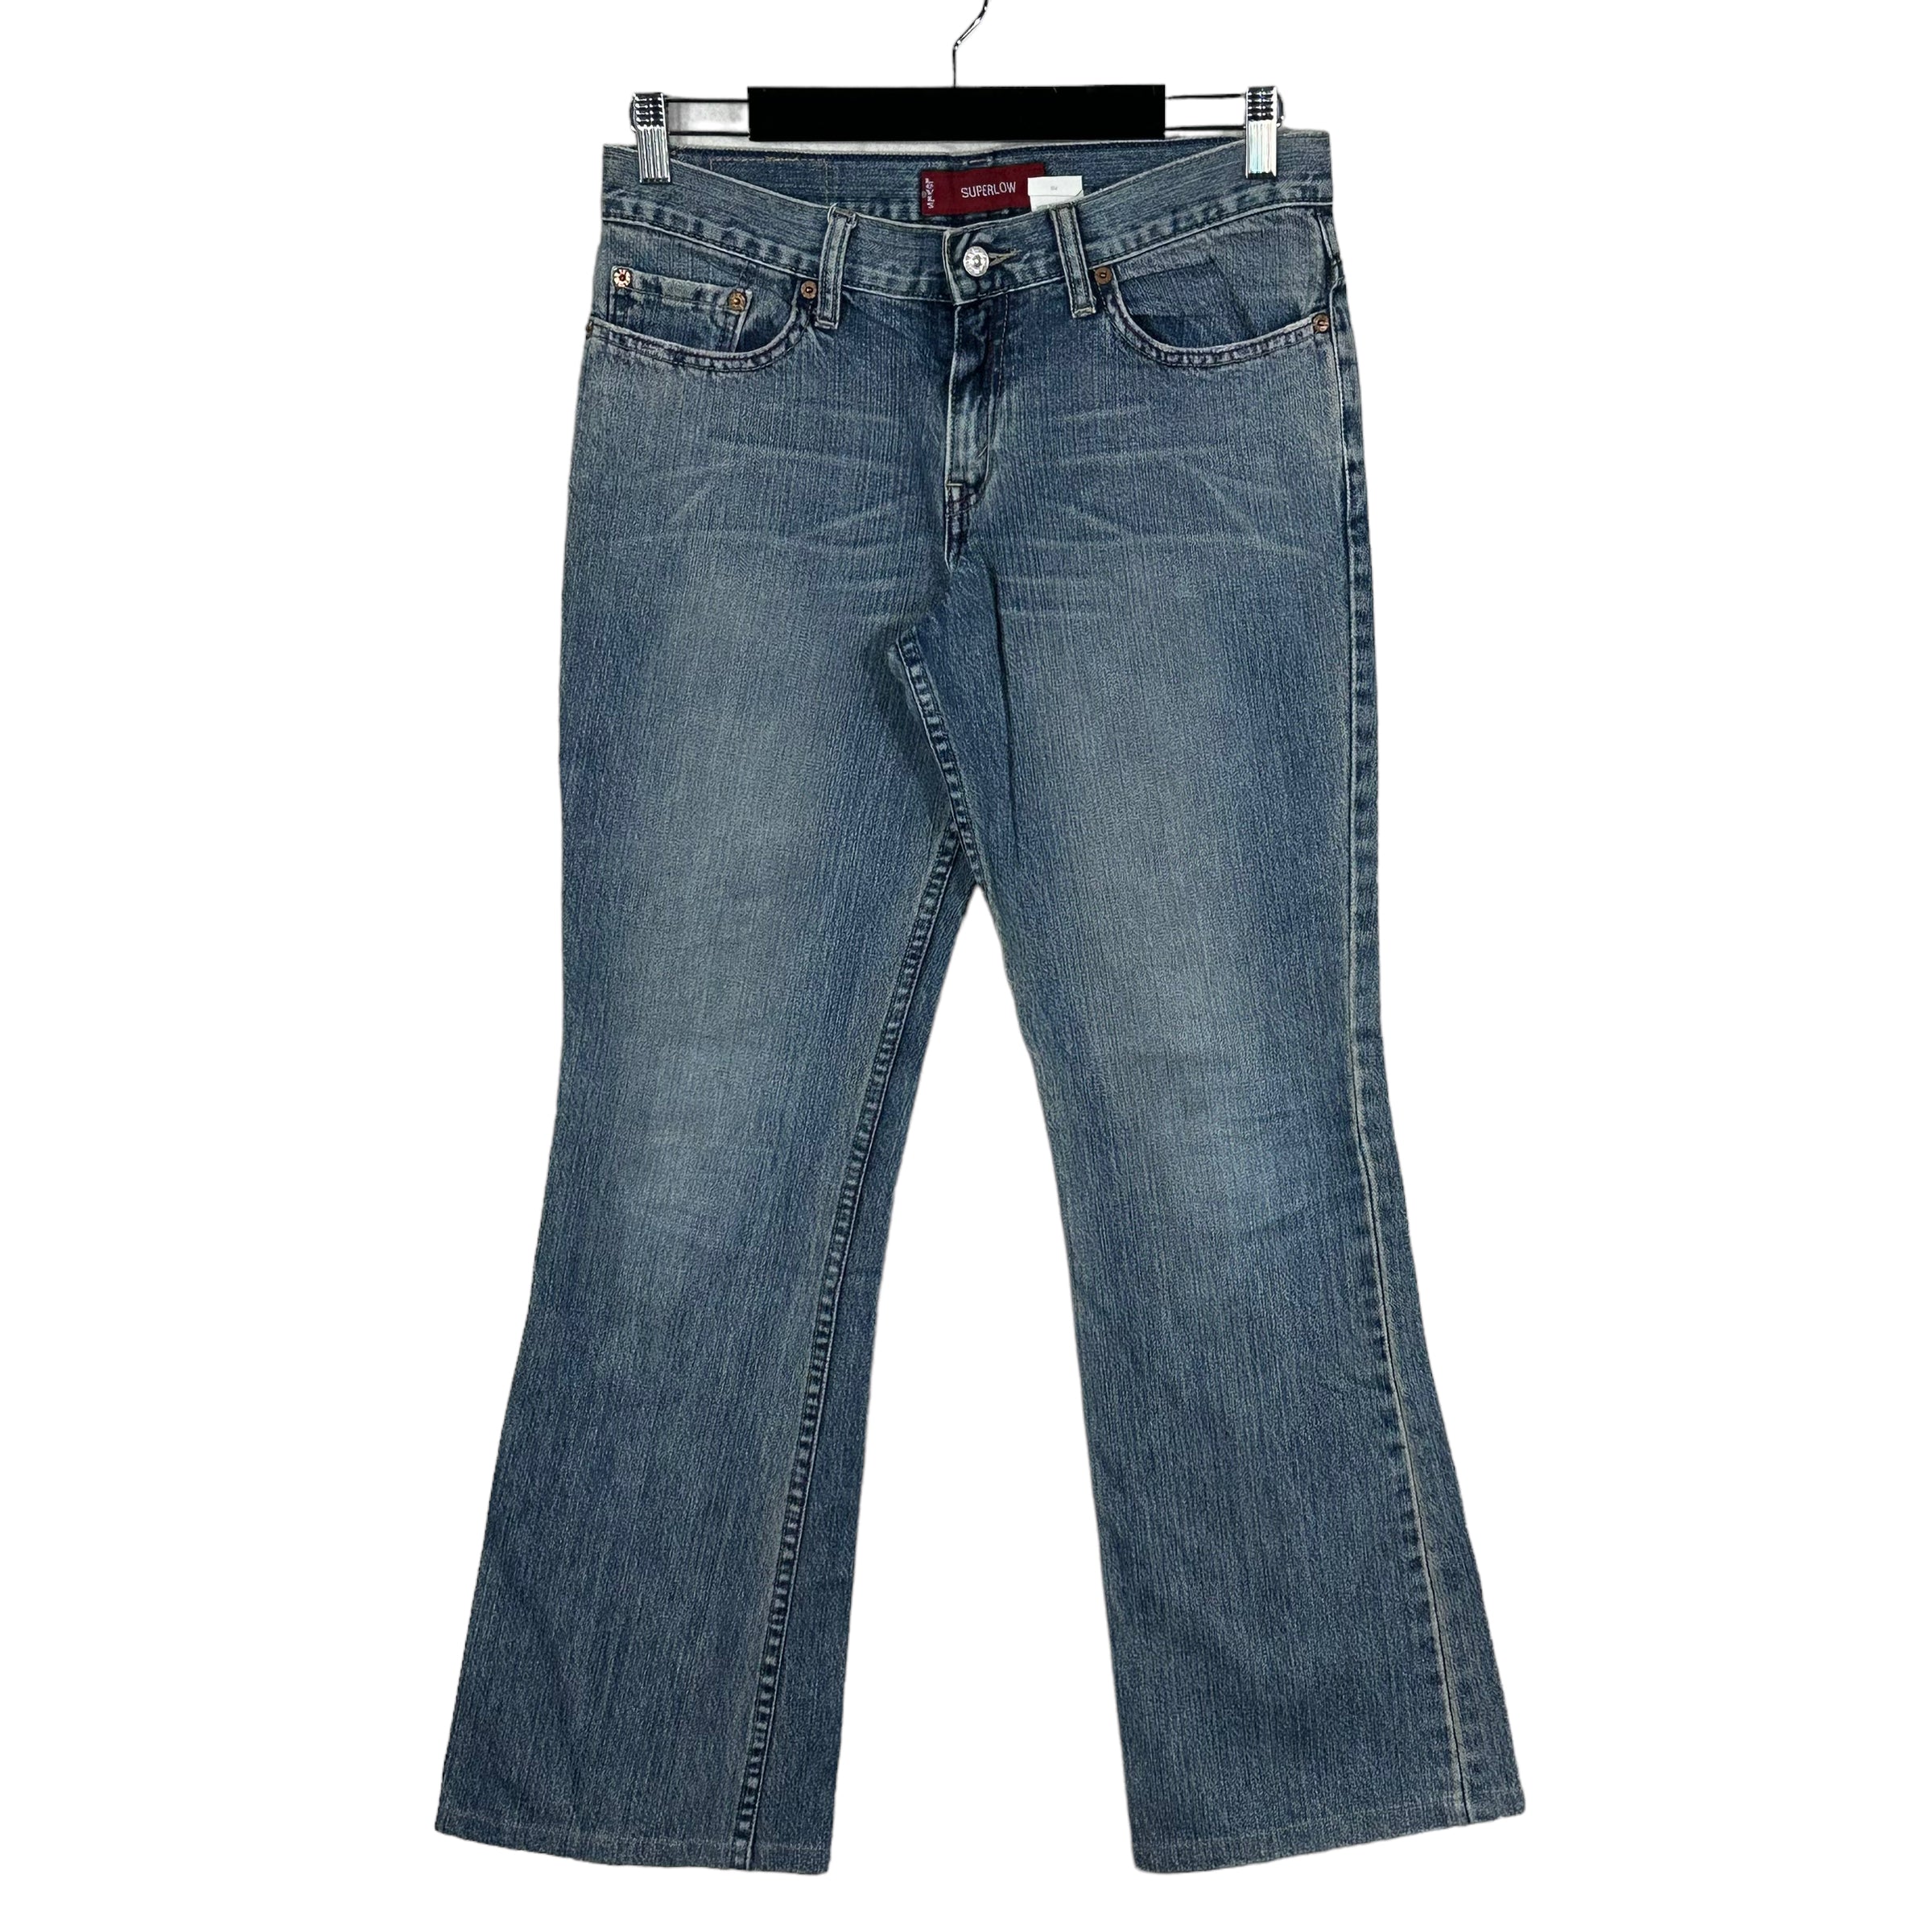 Vintage Levi's 518 Denim Jeans 90s